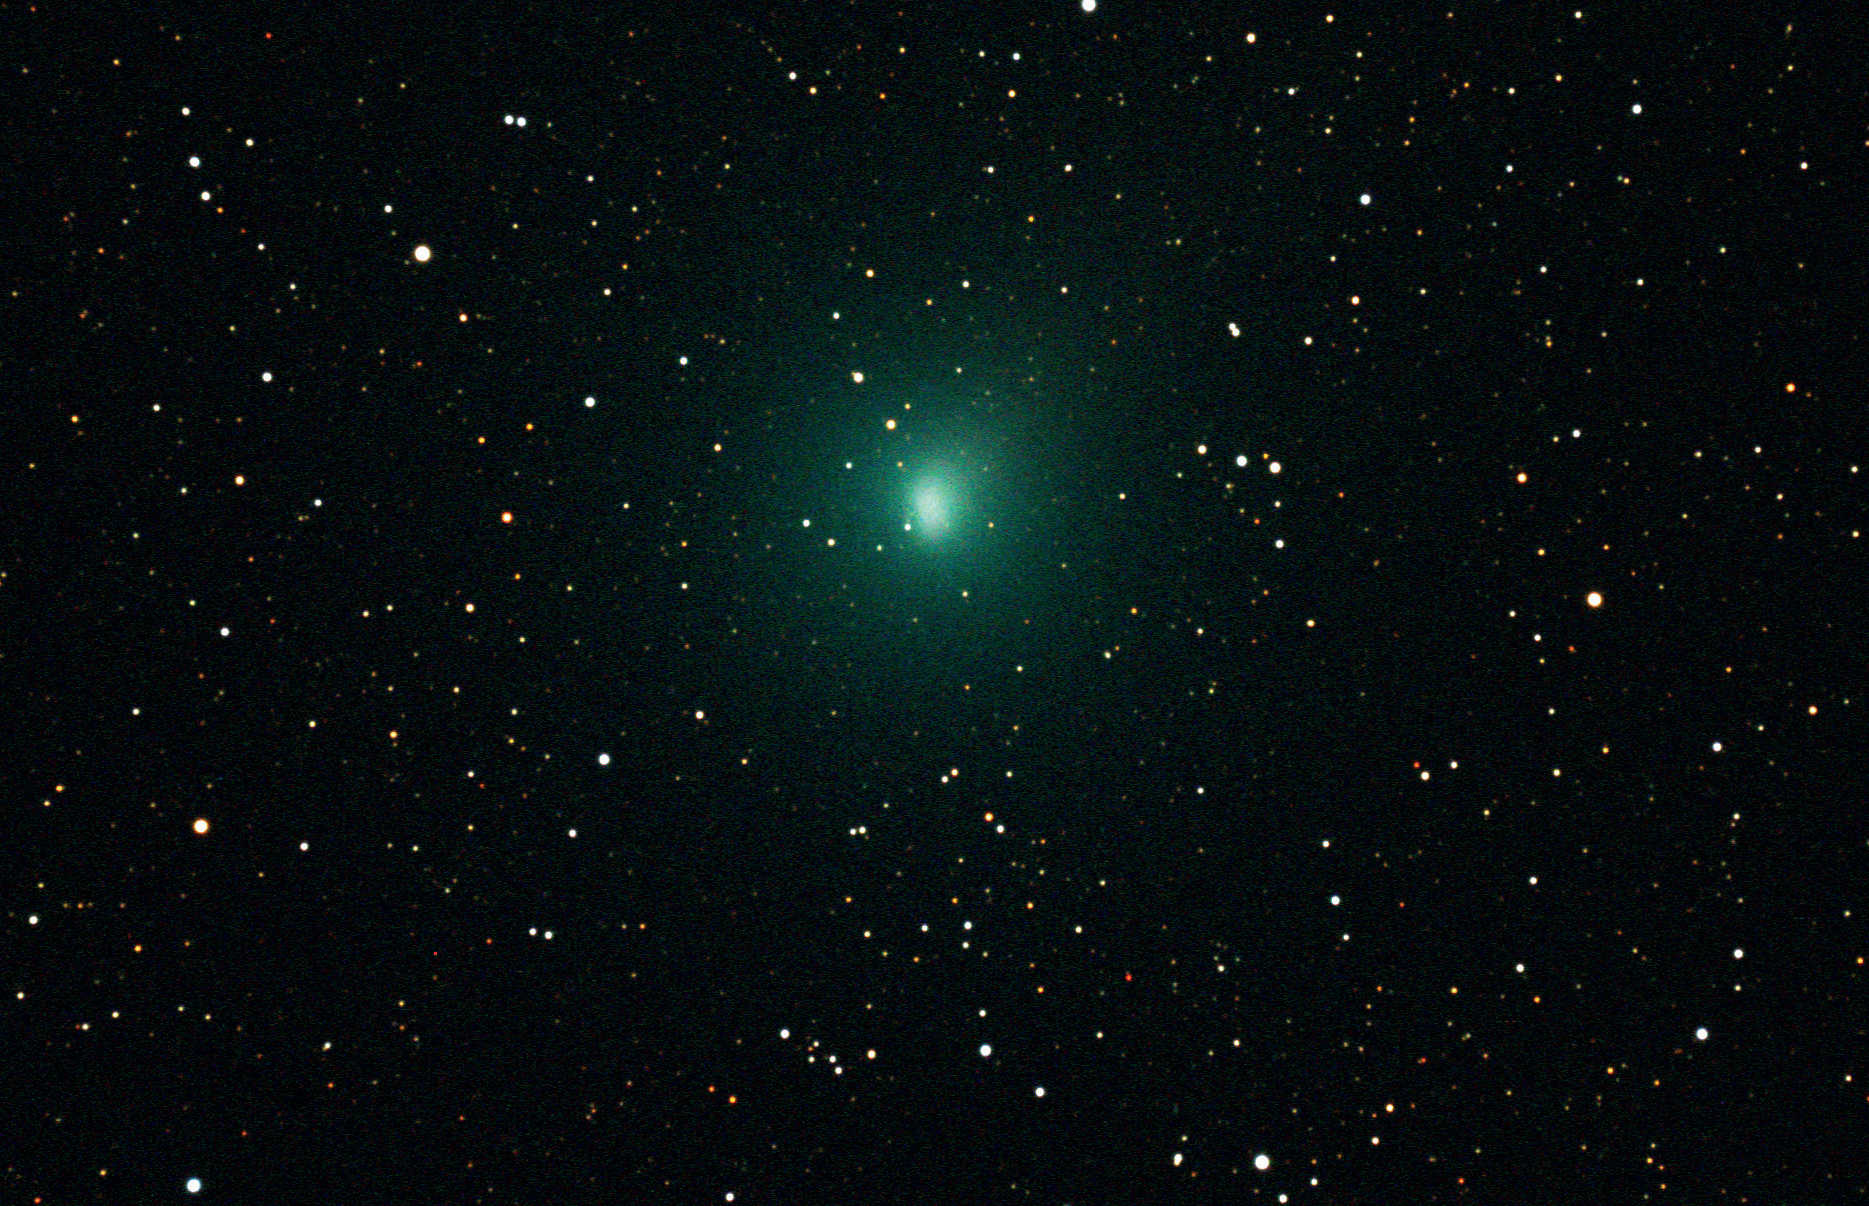 … oppure centrare l’immagine sulle stelle in modo che appaiano puntiformi, ottenendo però la testa della cometa meno nitida (b). I dati raw sono stati ottenuti il 11/10/2010 con una fotocamera CCD non raffreddata di tipo SBIG ST-4000XCM su un telescopio Takahashi TOA-130. La somma è data da otto scatti singoli con tempo di esposizione di 120 secondi ciascuno.